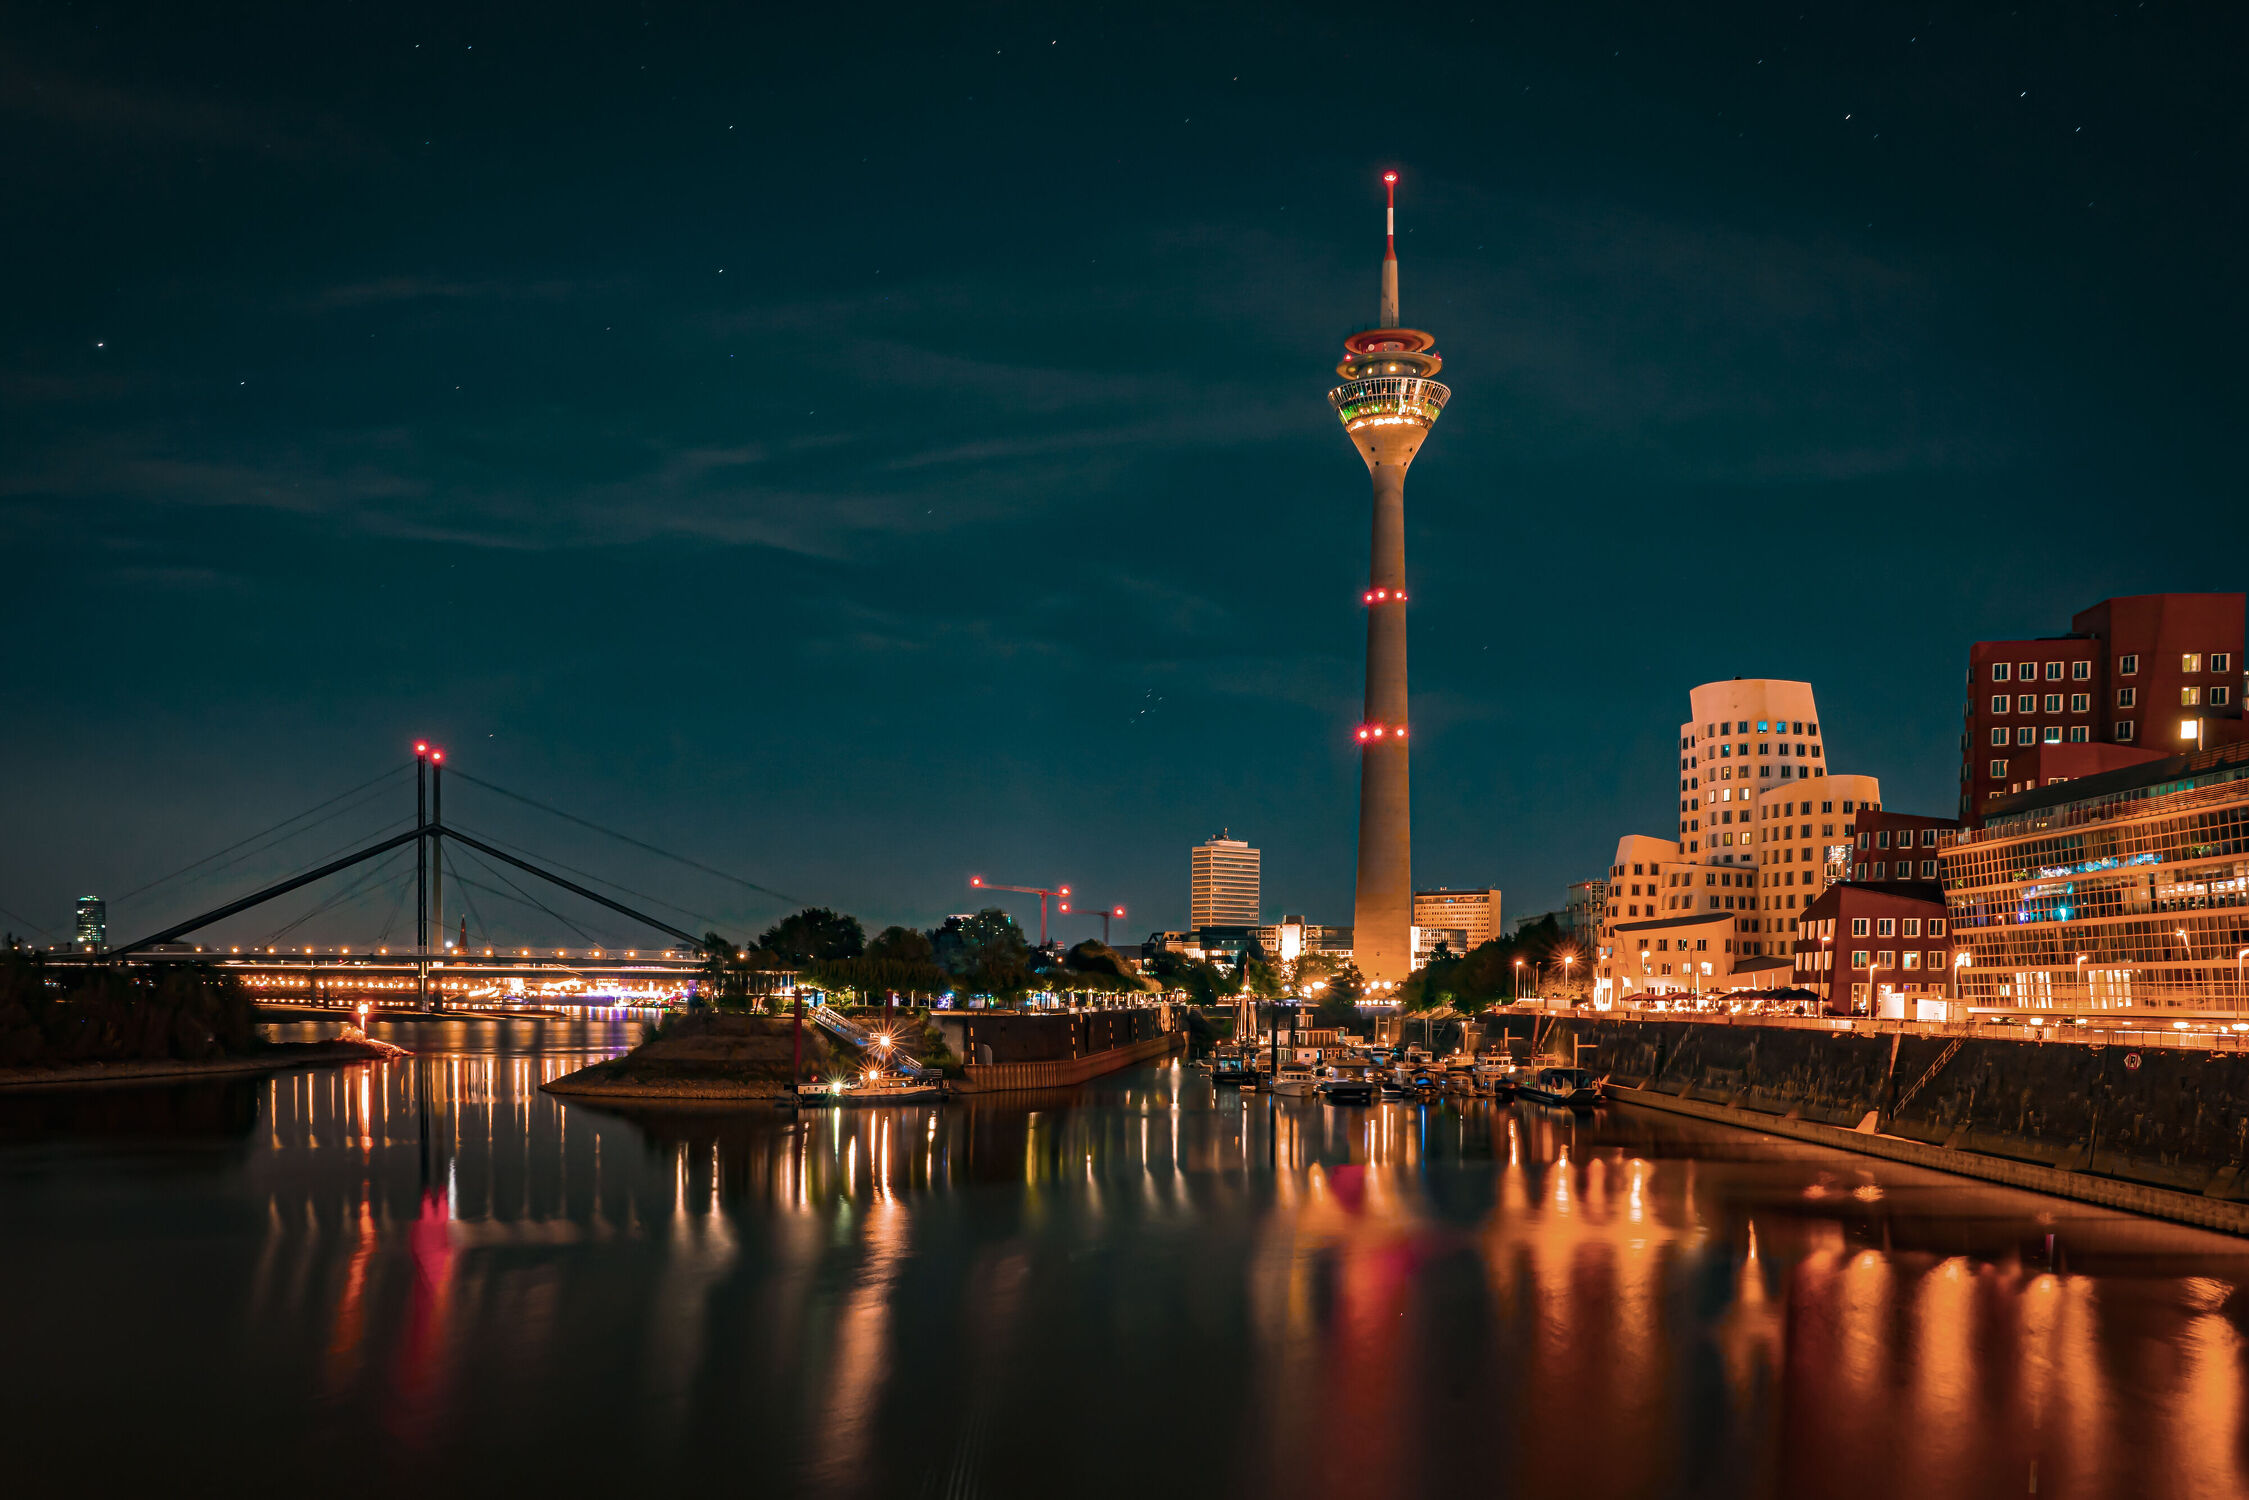 Bild mit Fernsehturm, Stadt, Spiegelung, Nacht, Fluss, Rhein, Düsseldorf, Medienhafen, Blauestunde, Rheinufer